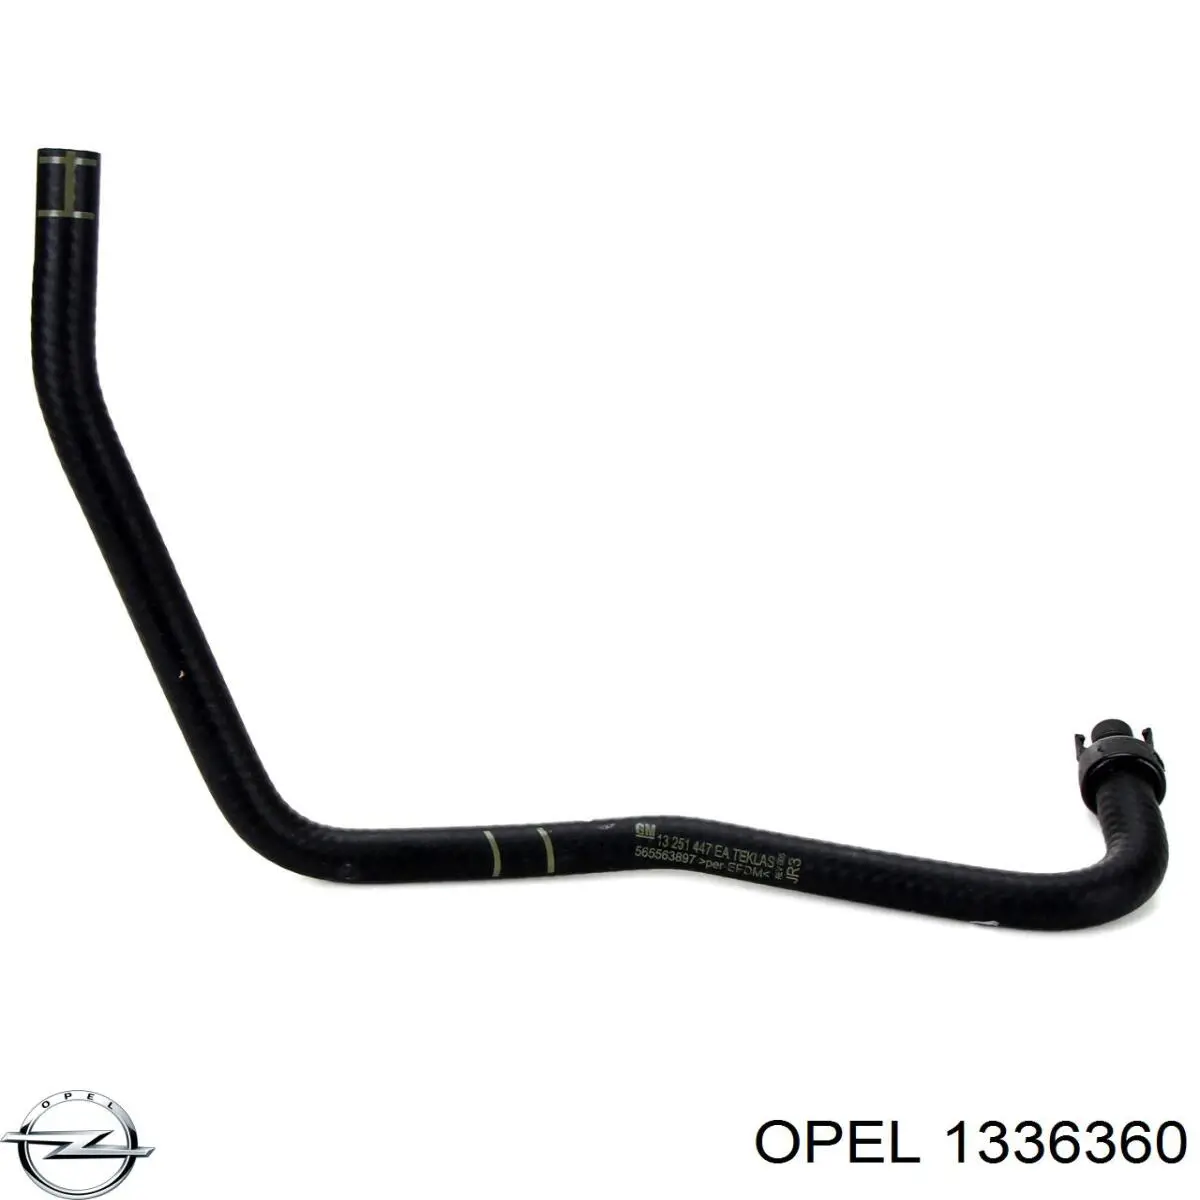 1336360 Opel tubería de radiador, tuberia flexible calefacción, superior